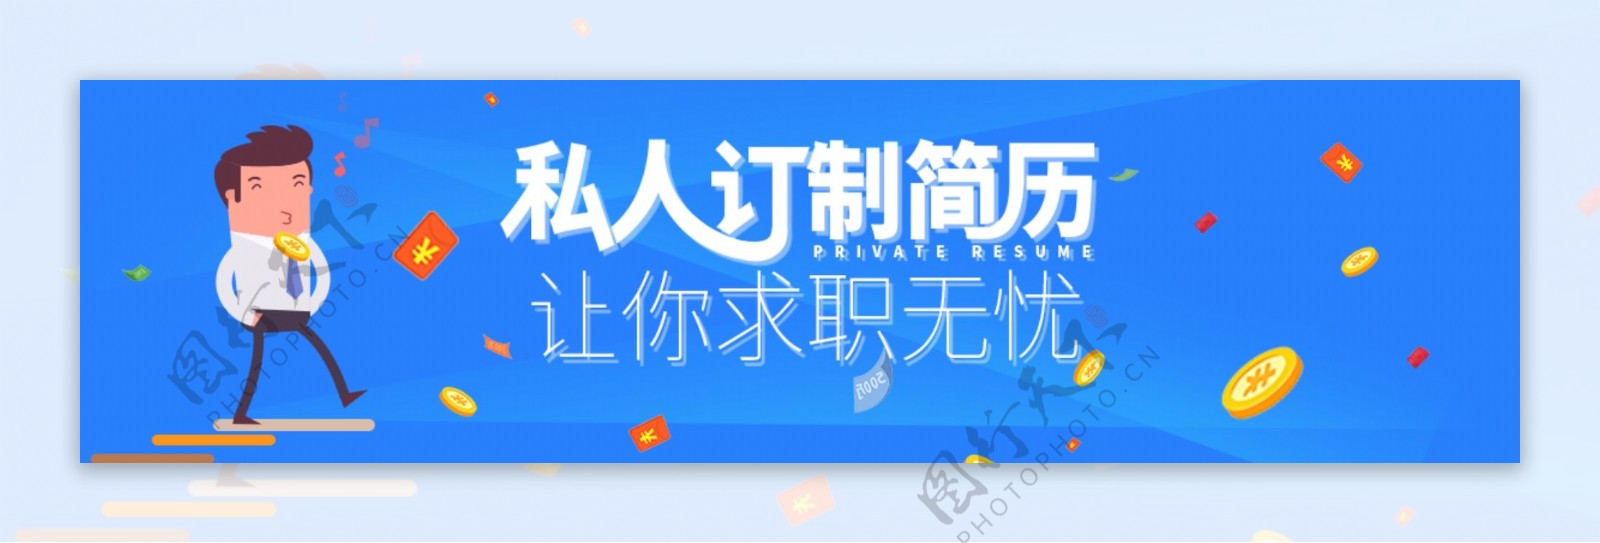 简历商务banner扁平化